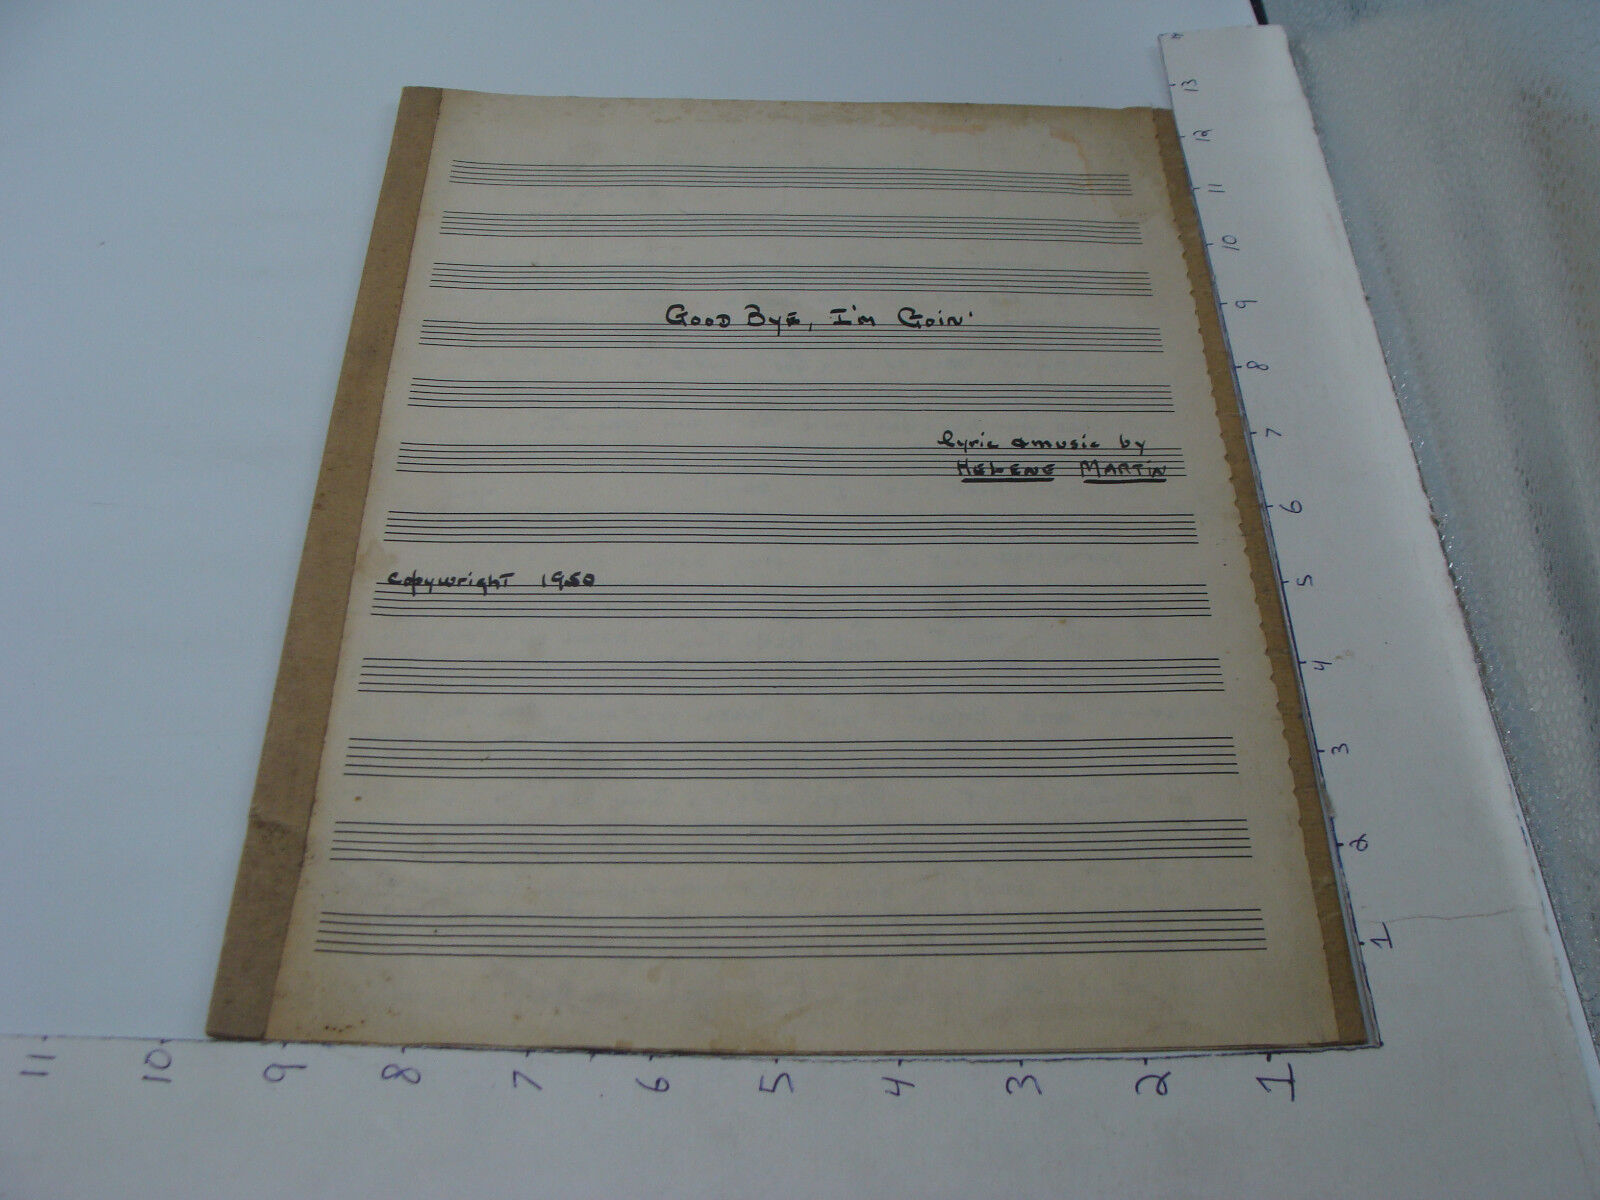 Vintage Hand written MUSIC -- GOOD BYE, I'M GOIN' by HELENE MARTIN 1950